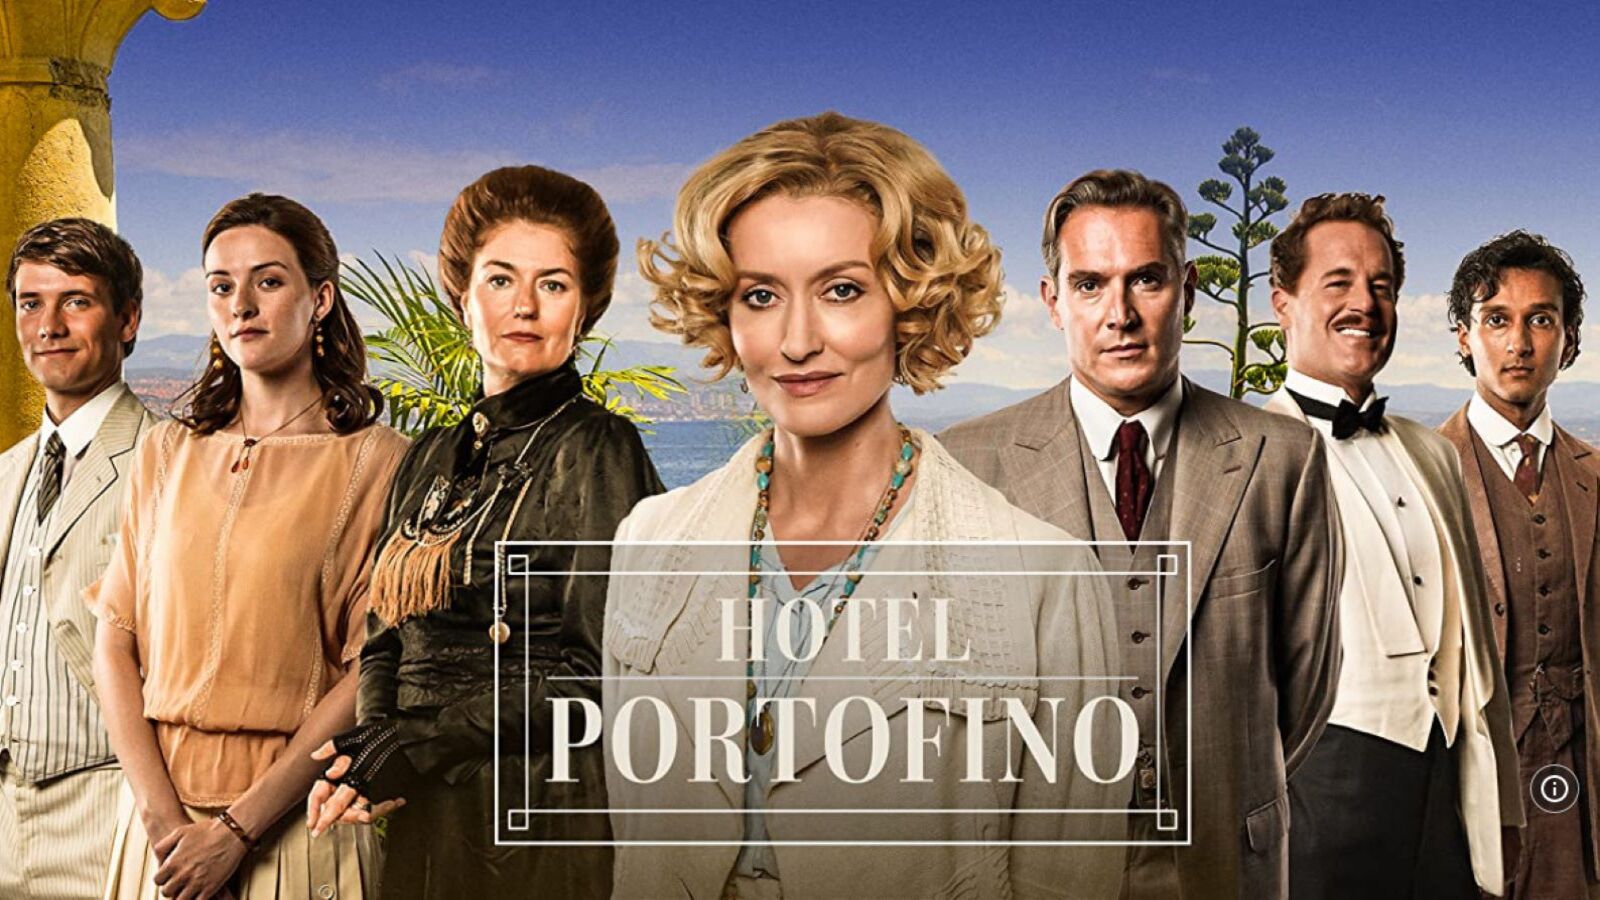 Hotel Portofino stasera su Rai 1: trama e cast delle puntate finali della serie